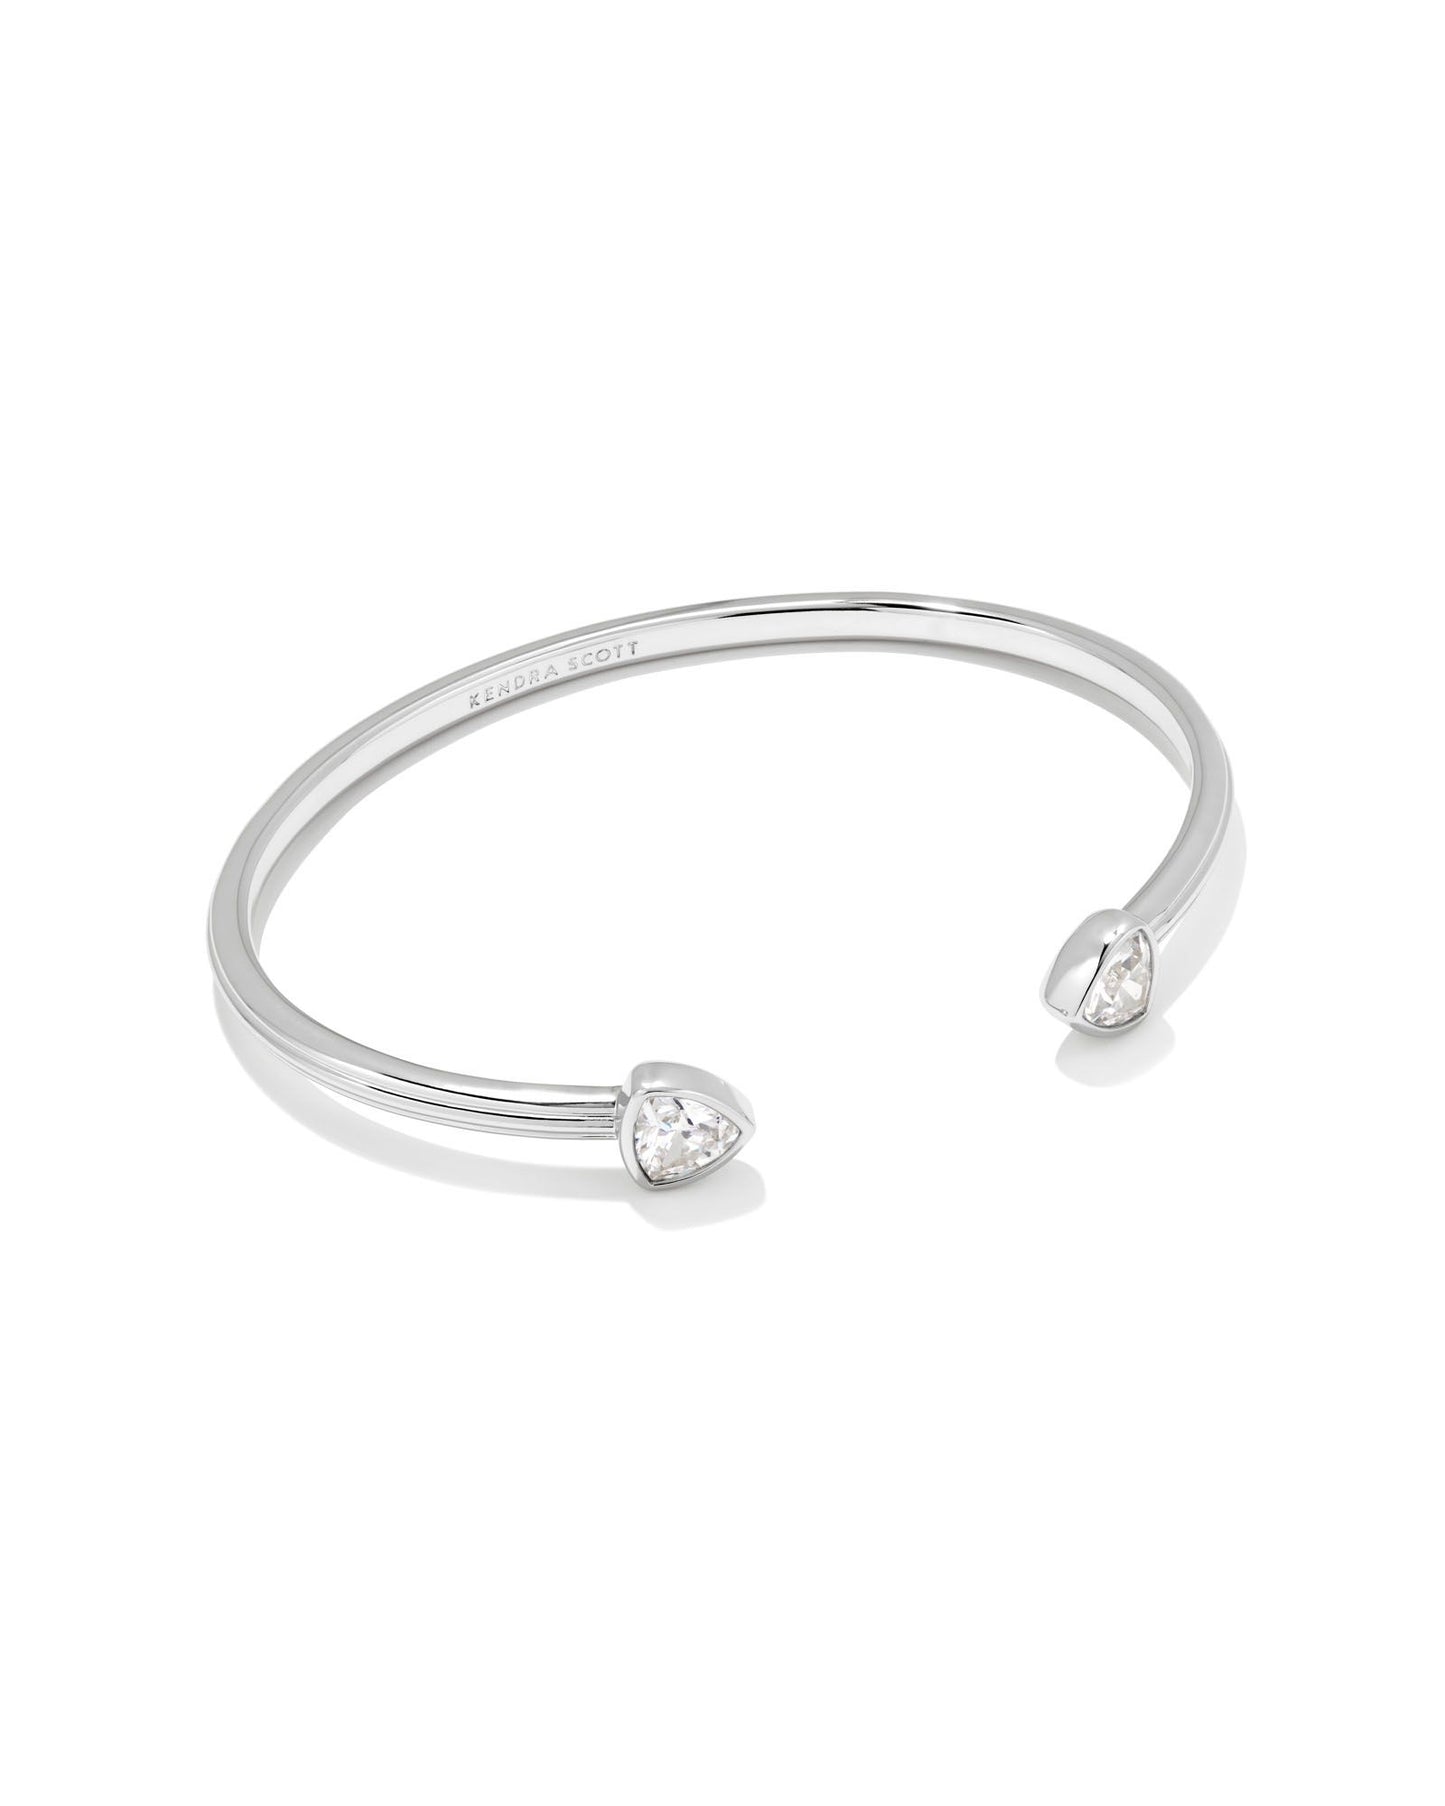 Arden Cuff Bracelet | Silver & White Crystals